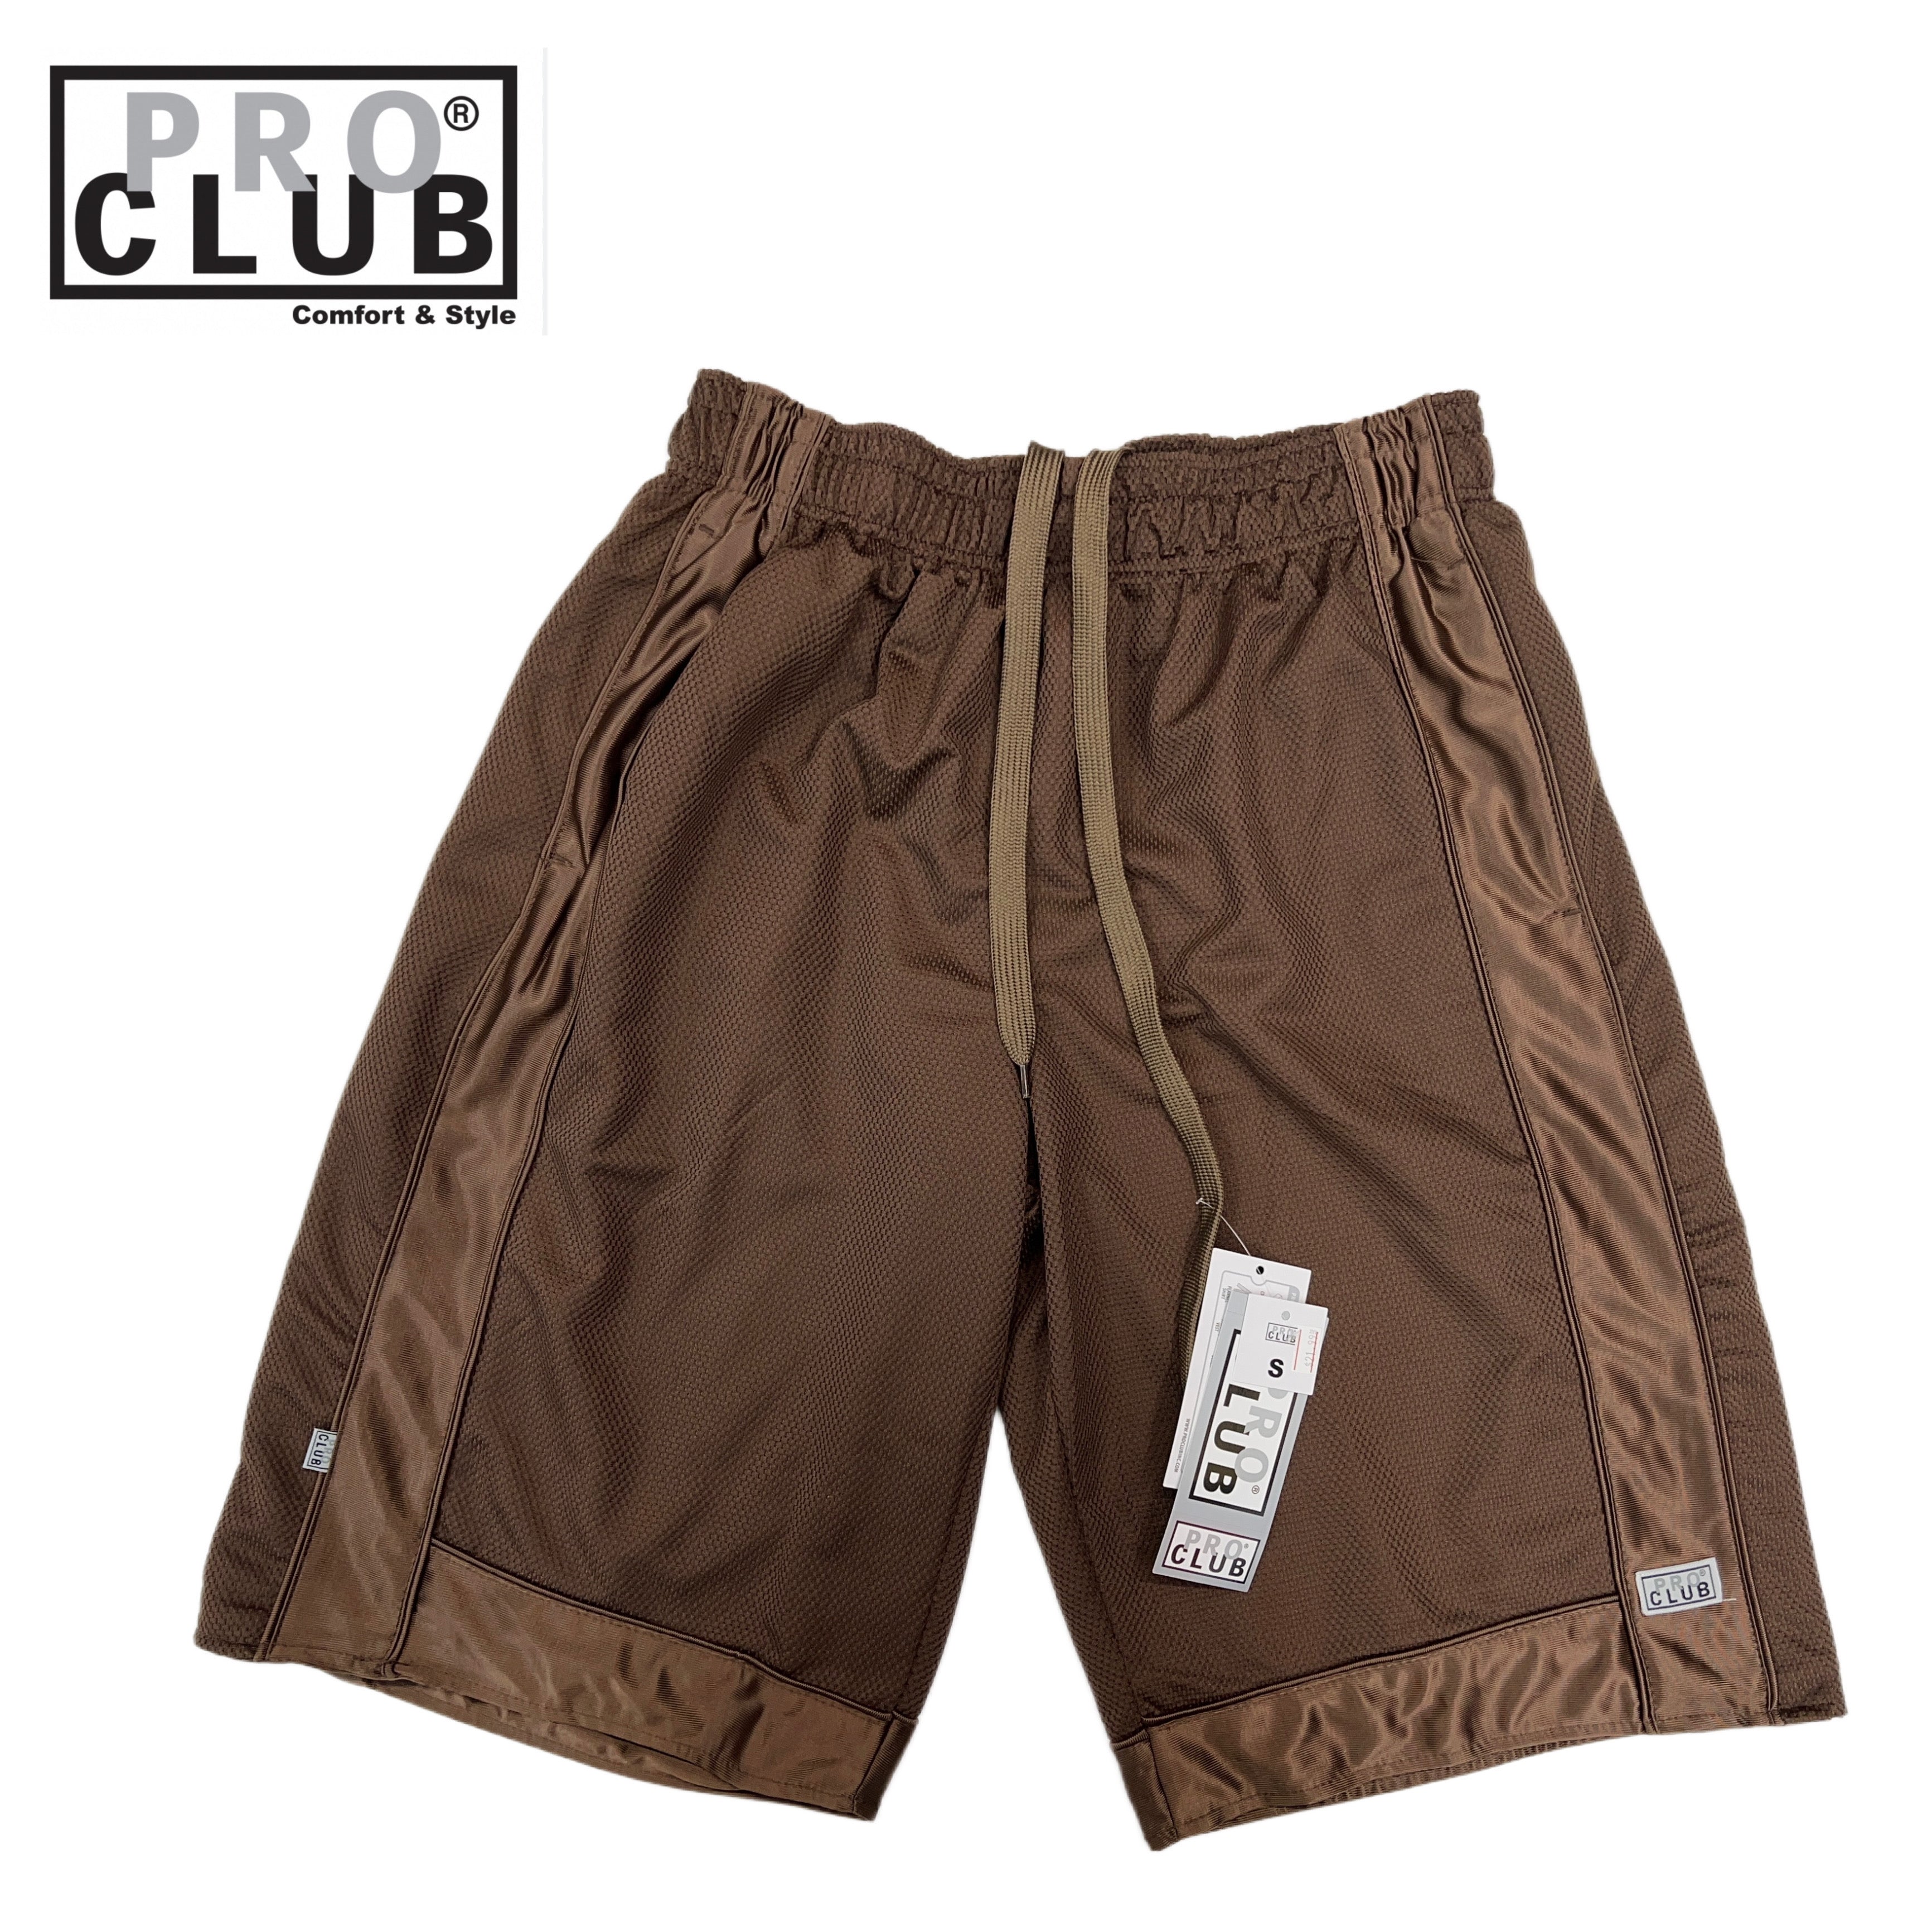 2 NEW ProClub Boxer Briefs MIX Color Men Underwear shorts Pro Club 4XL 2PC